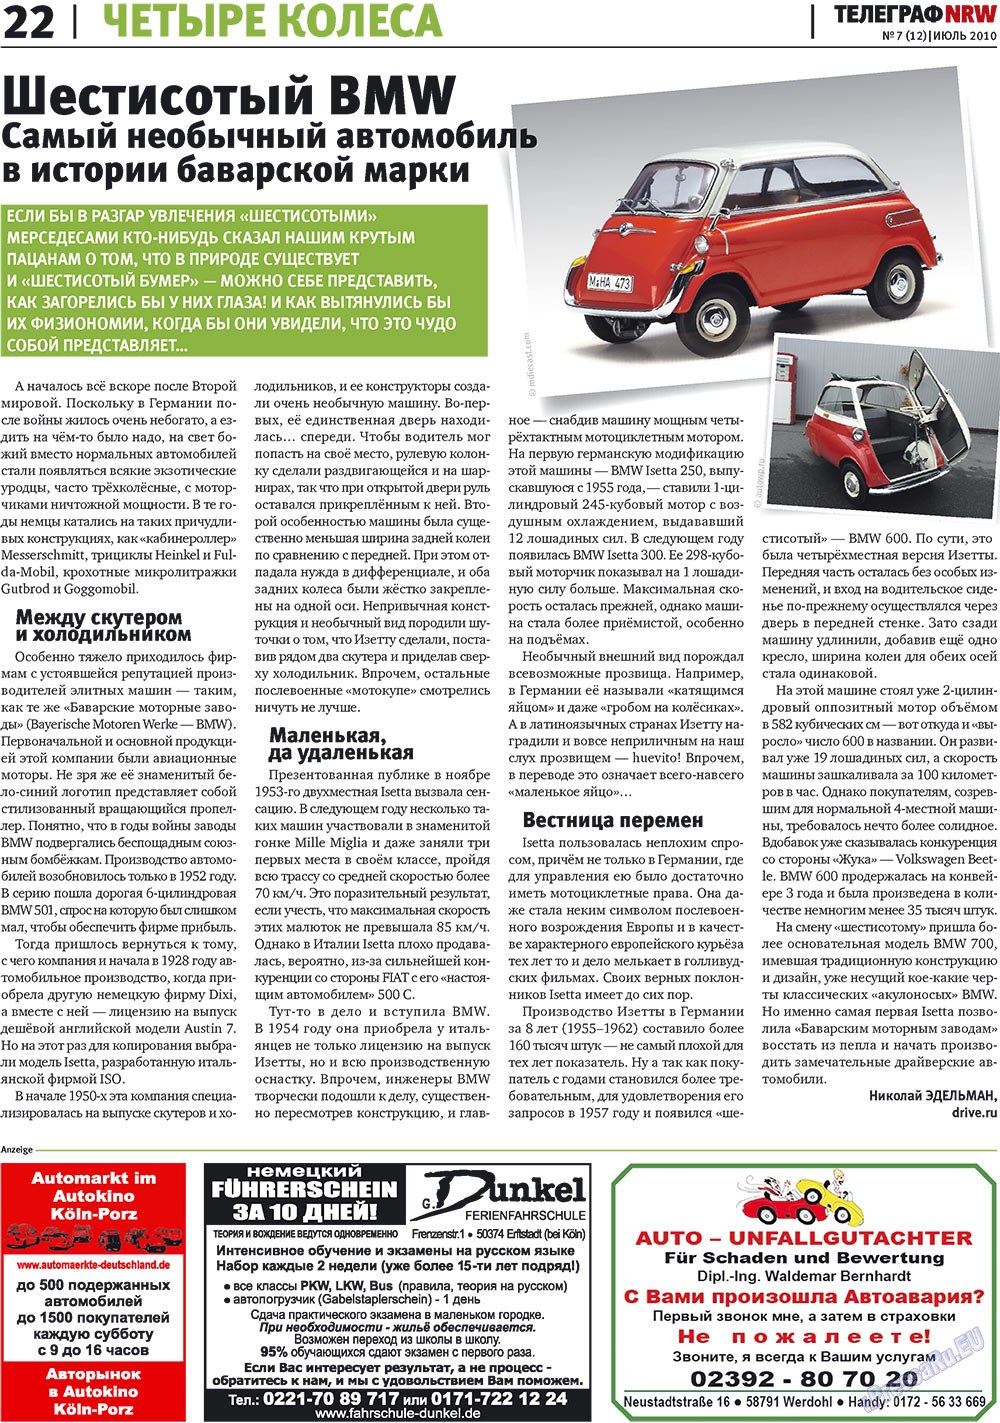 Telegraf NRW (Zeitung). 2010 Jahr, Ausgabe 7, Seite 22